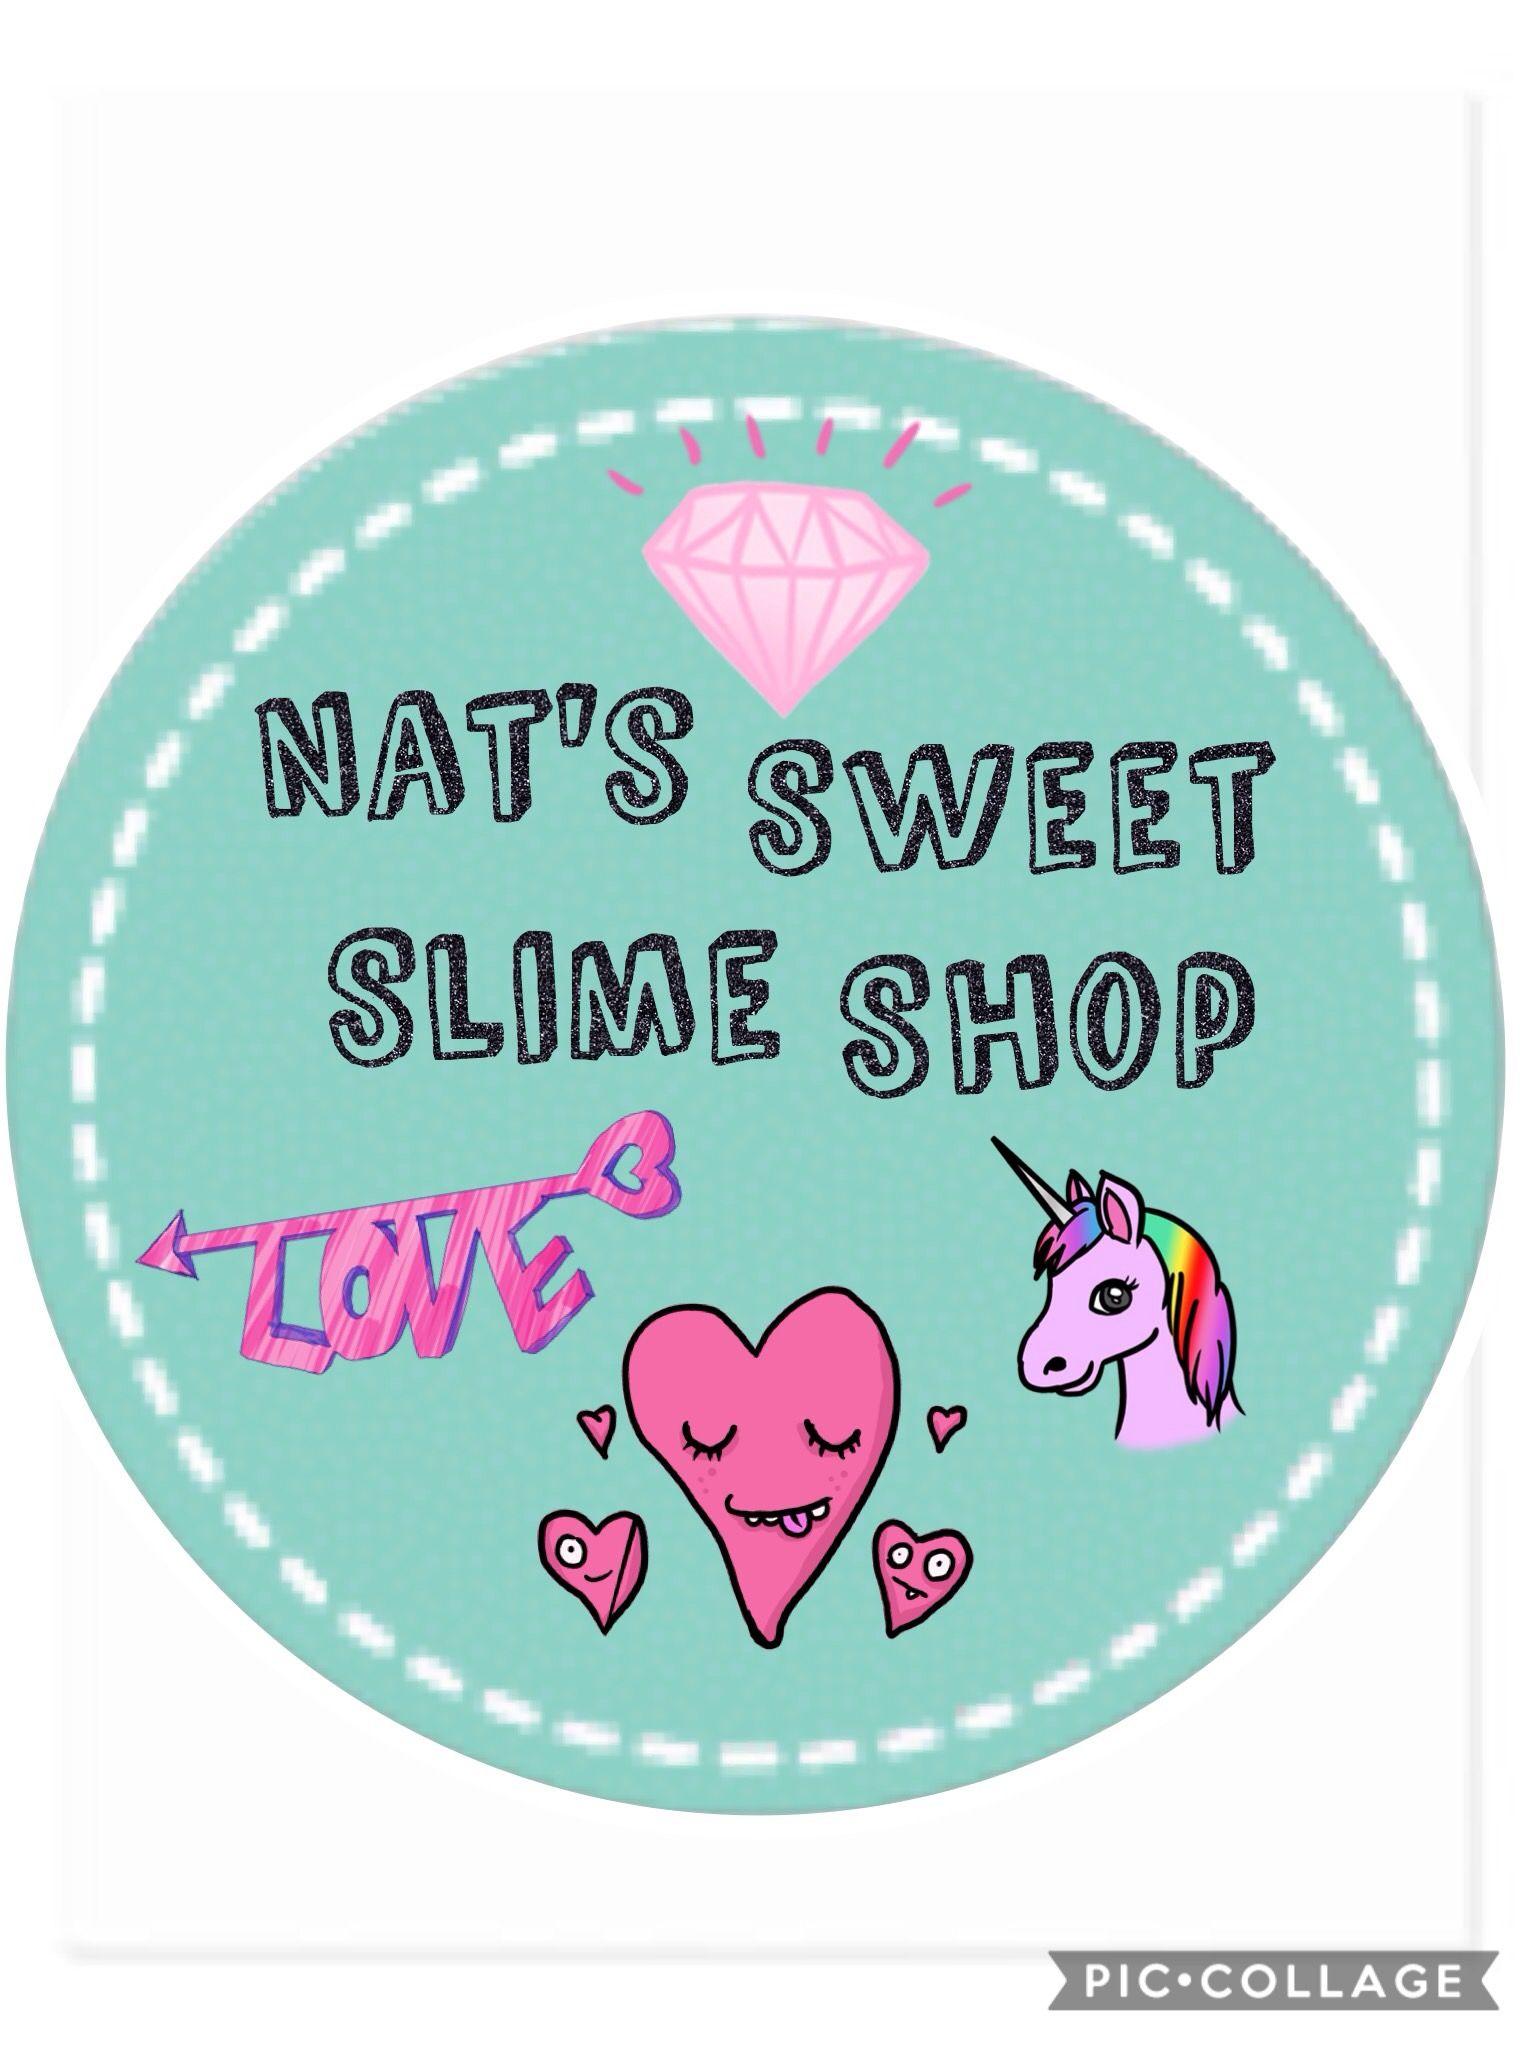 Cute Slime Logo - Nat's Slime Shop logo. - Album on Imgur